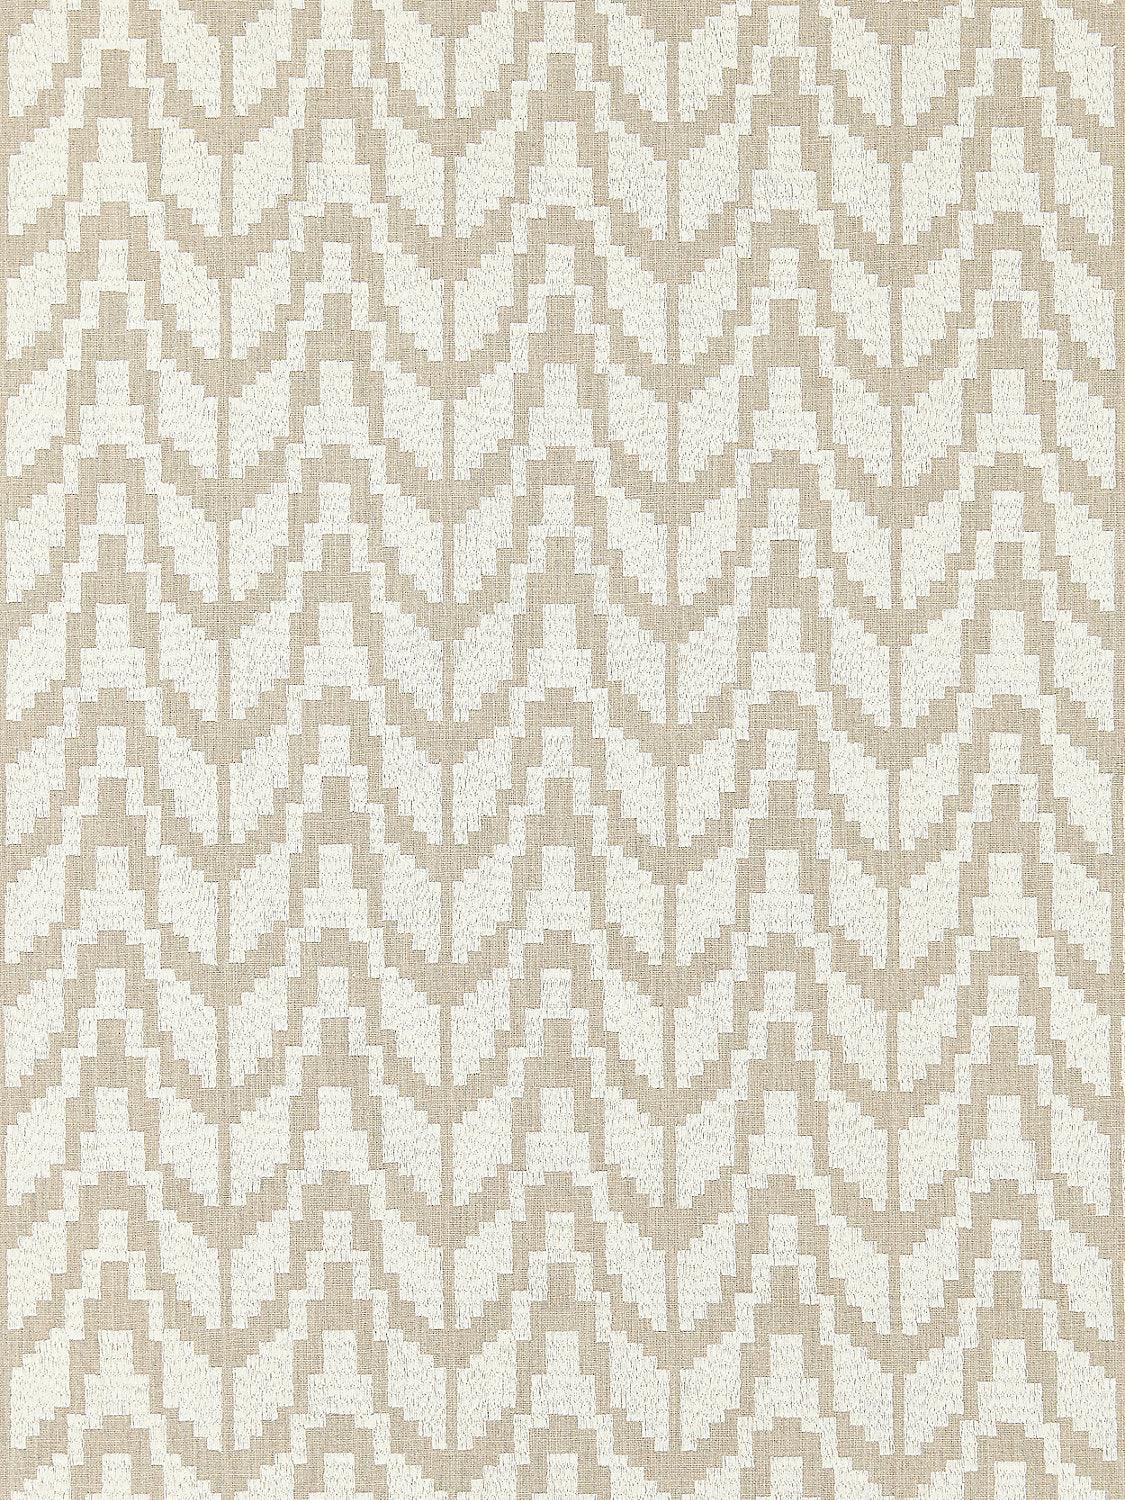 CHEVRON EMBROIDERY FLAX - Atlanta Fabrics